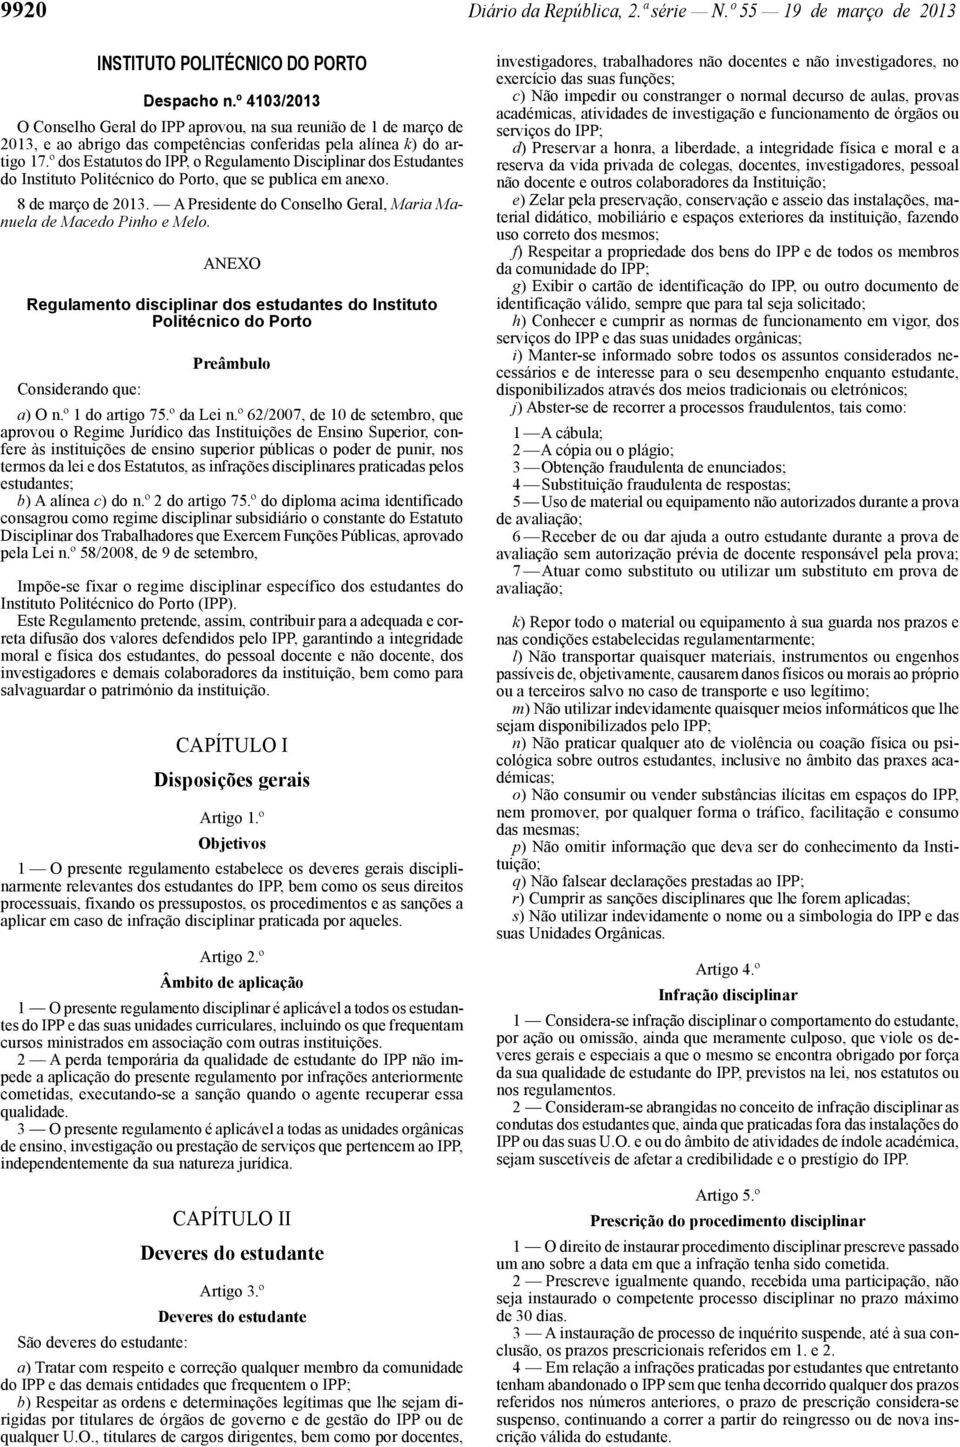 º dos Estatutos do IPP, o Regulamento Disciplinar dos Estudantes do Instituto Politécnico do Porto, que se publica em anexo. 8 de março de 2013.